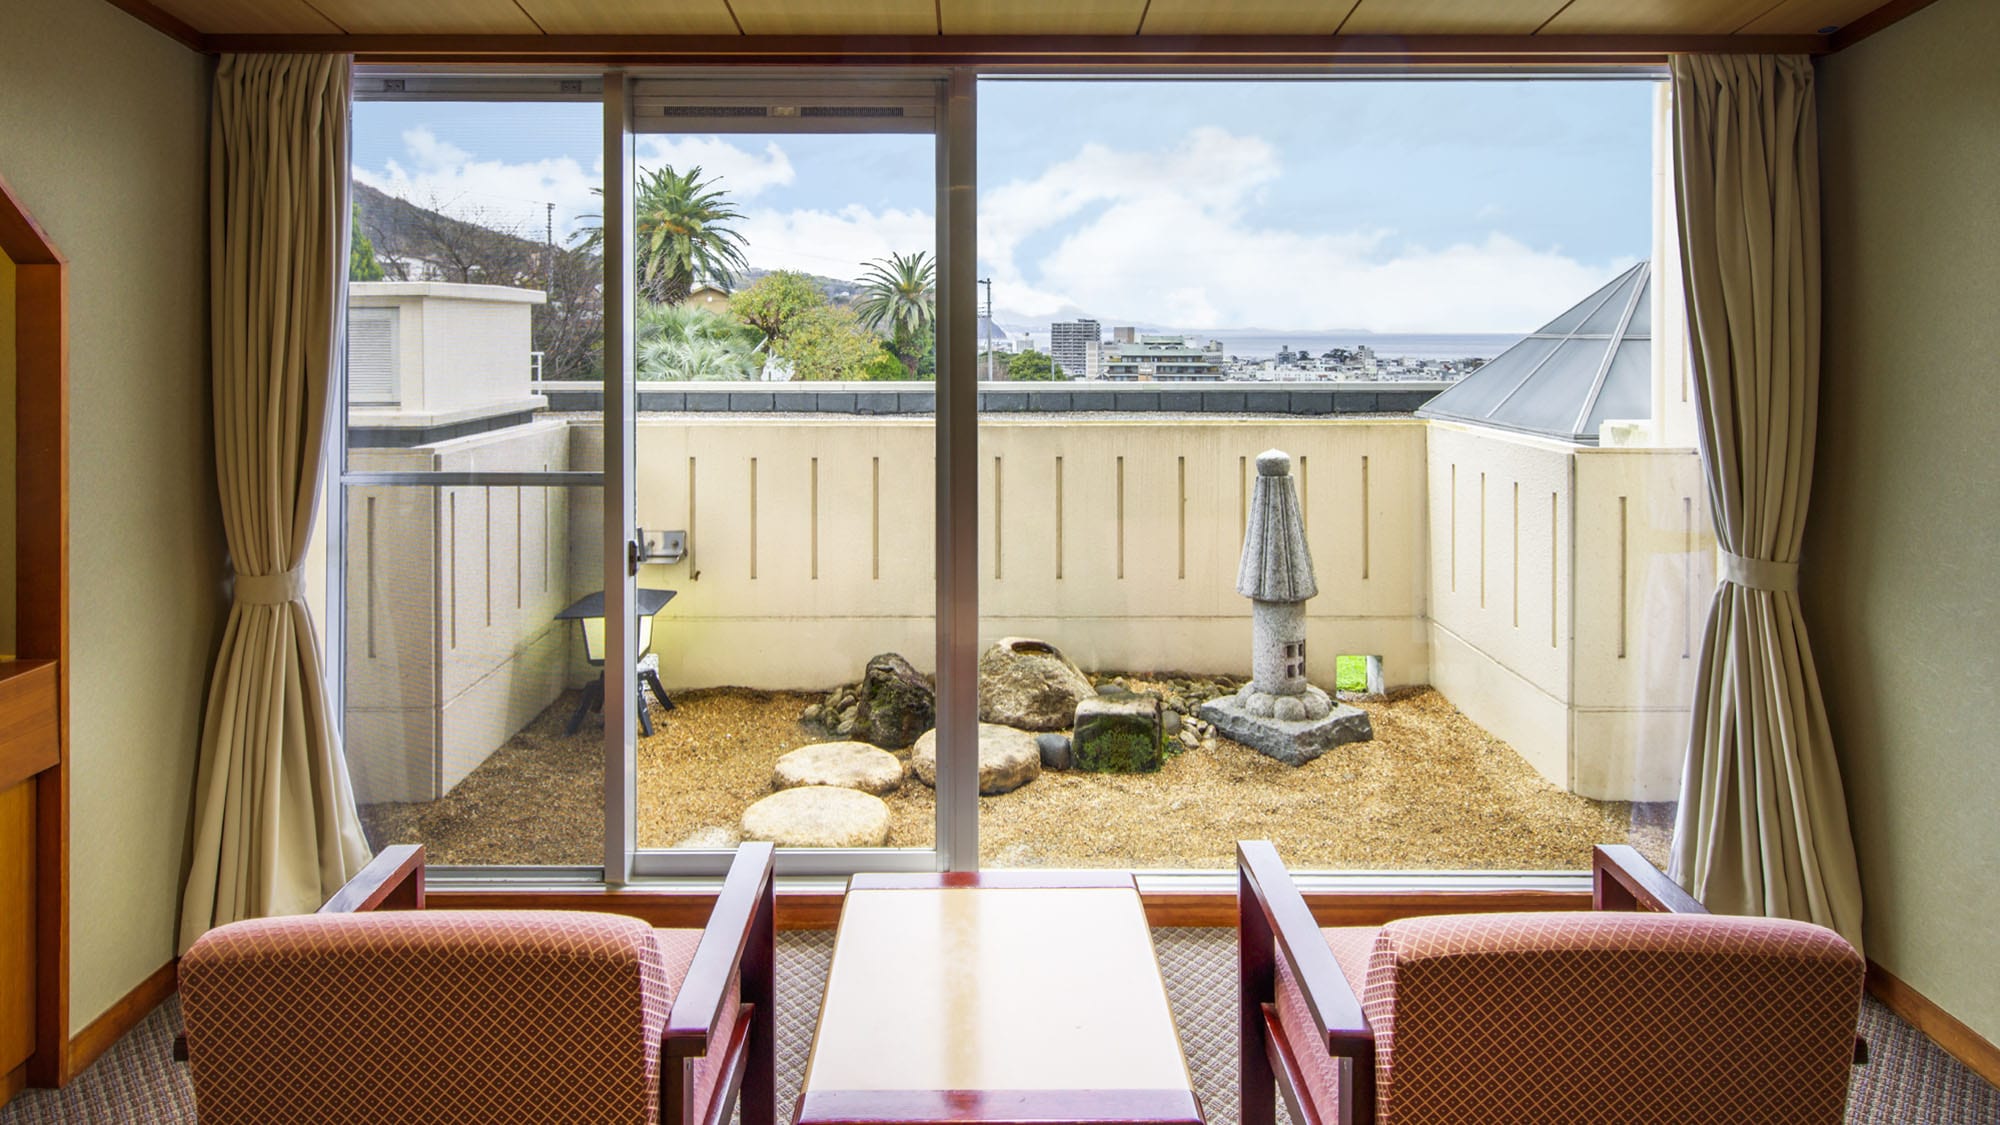 [中心翼楼日式房间44平方米]在带微型花园的宽敞纯日式房间中放松gorori